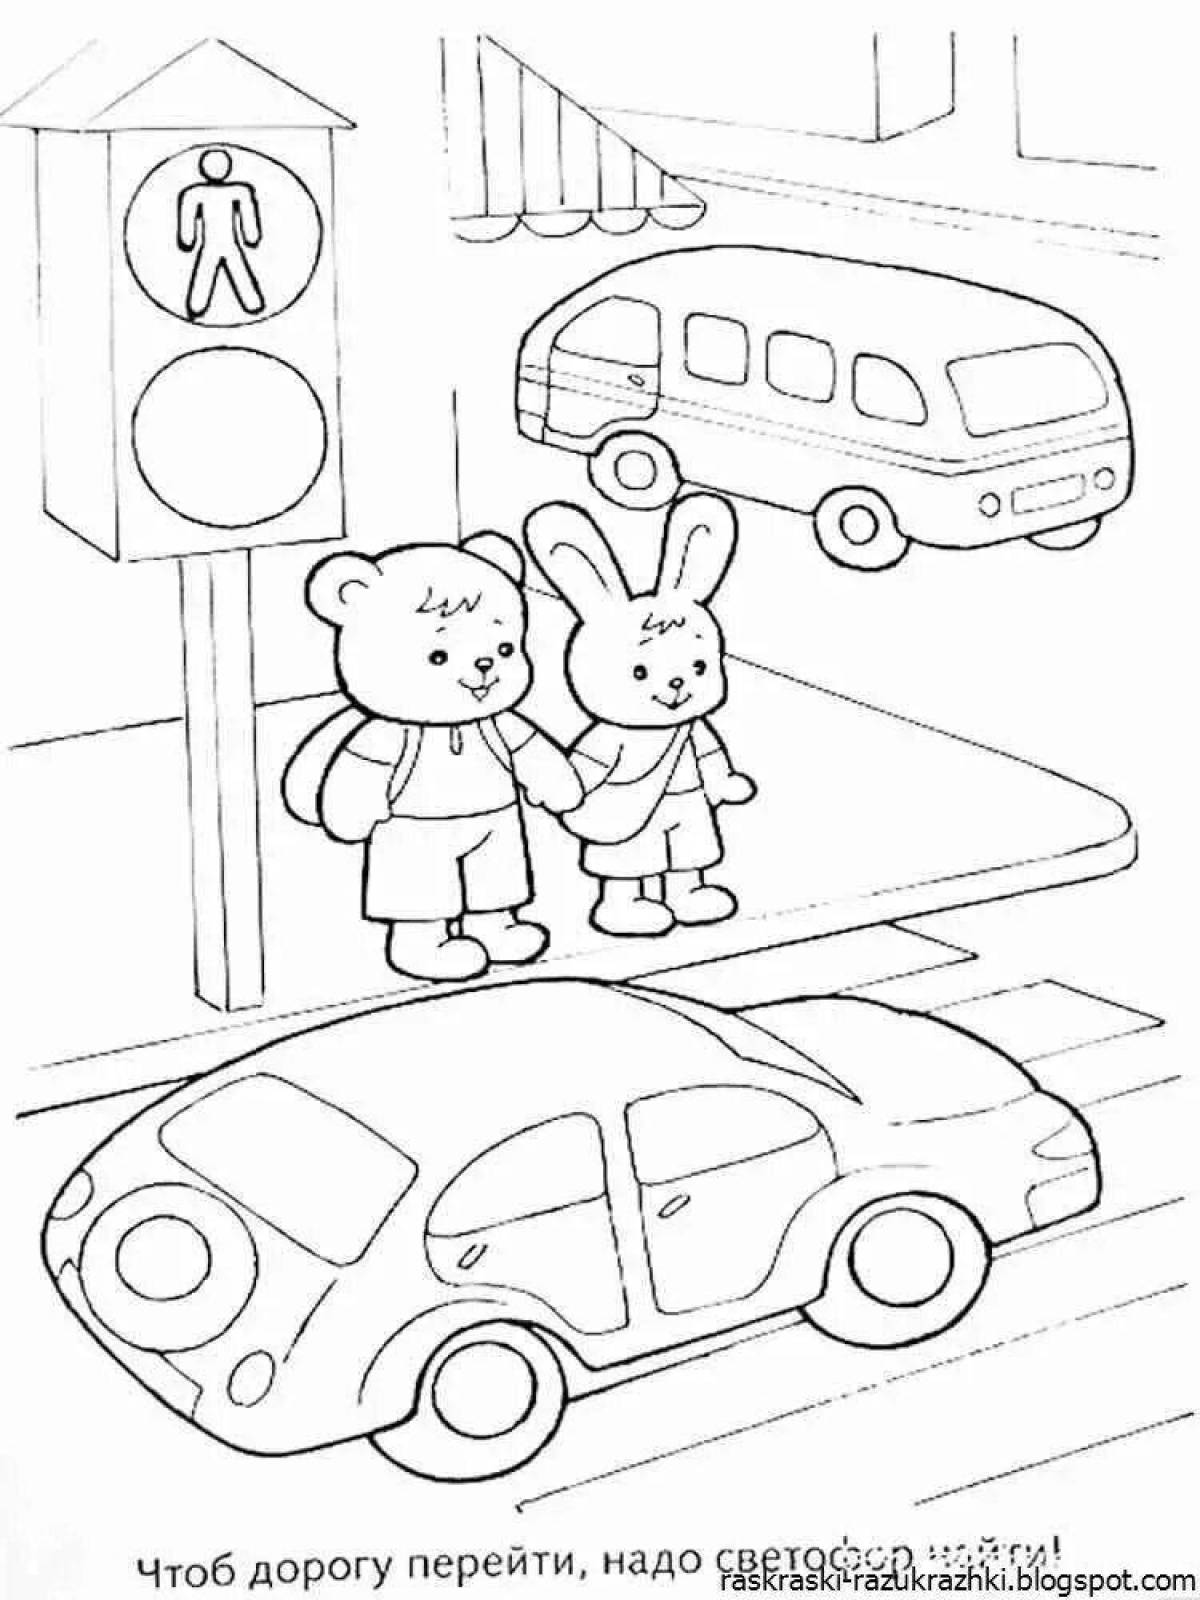 Развлекательная раскраска правила дорожного движения для 1-го класса